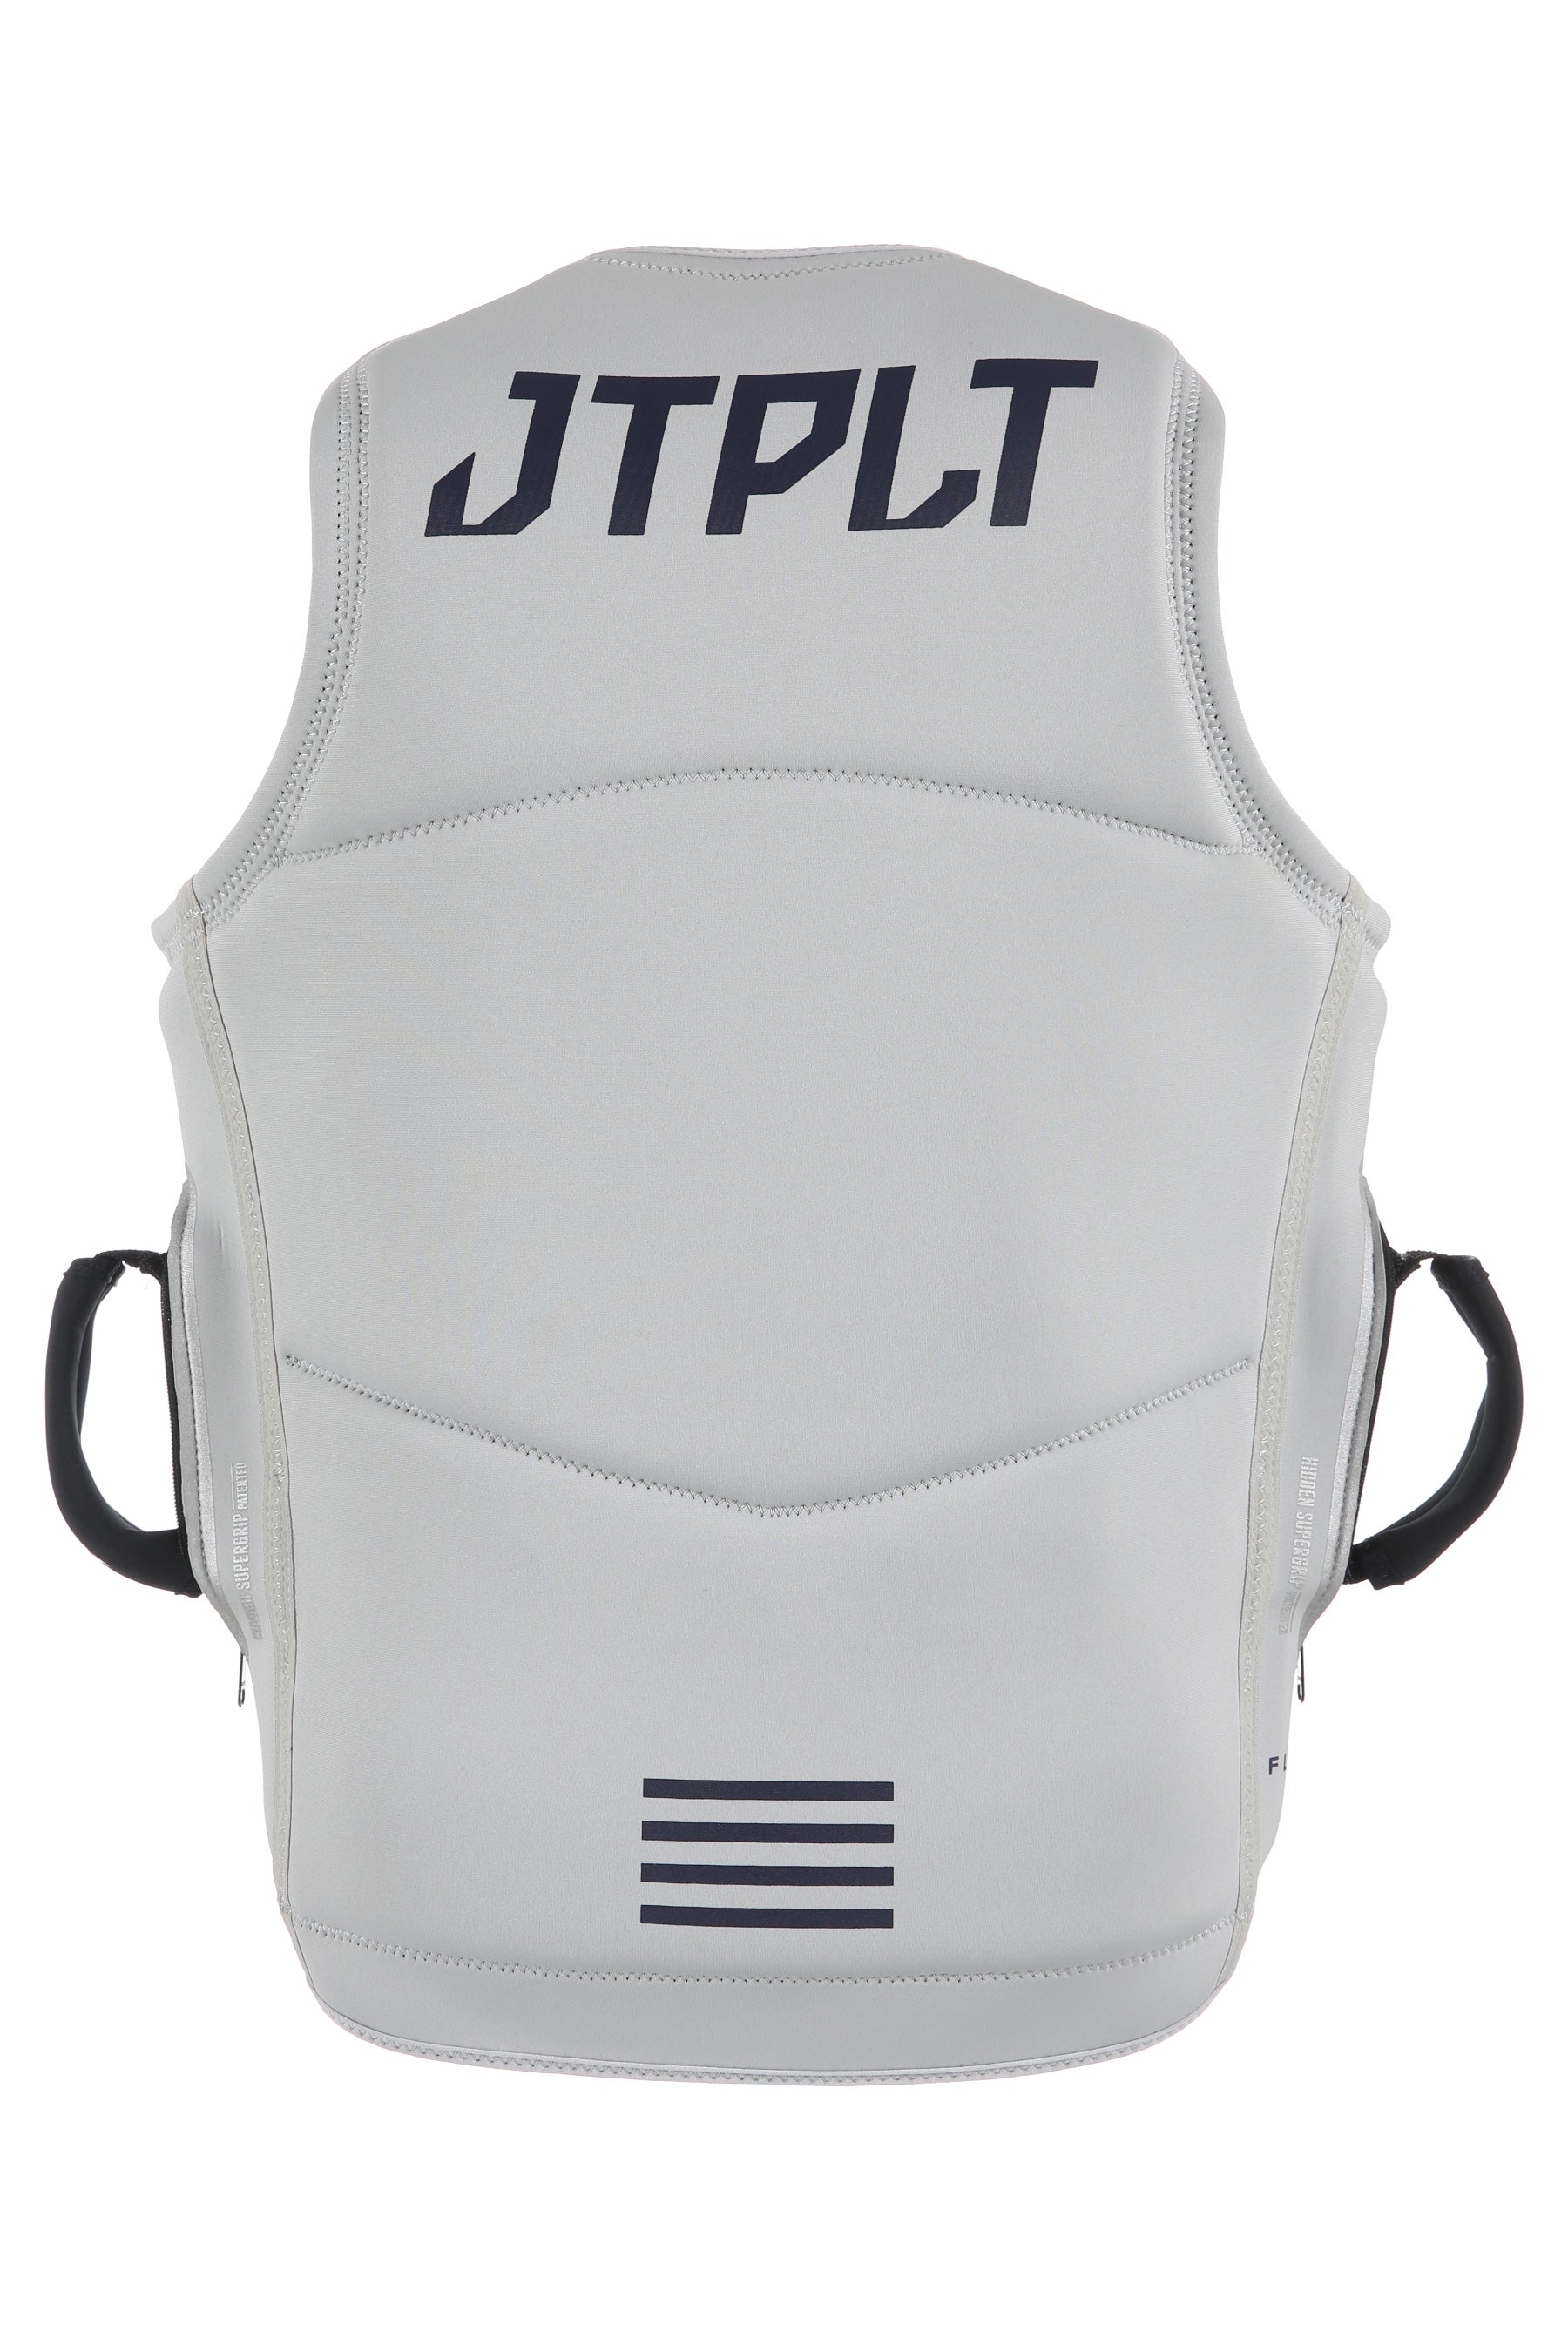 Jetpilot Vault Mens F/e Neo Vest Dual - Grey - Back